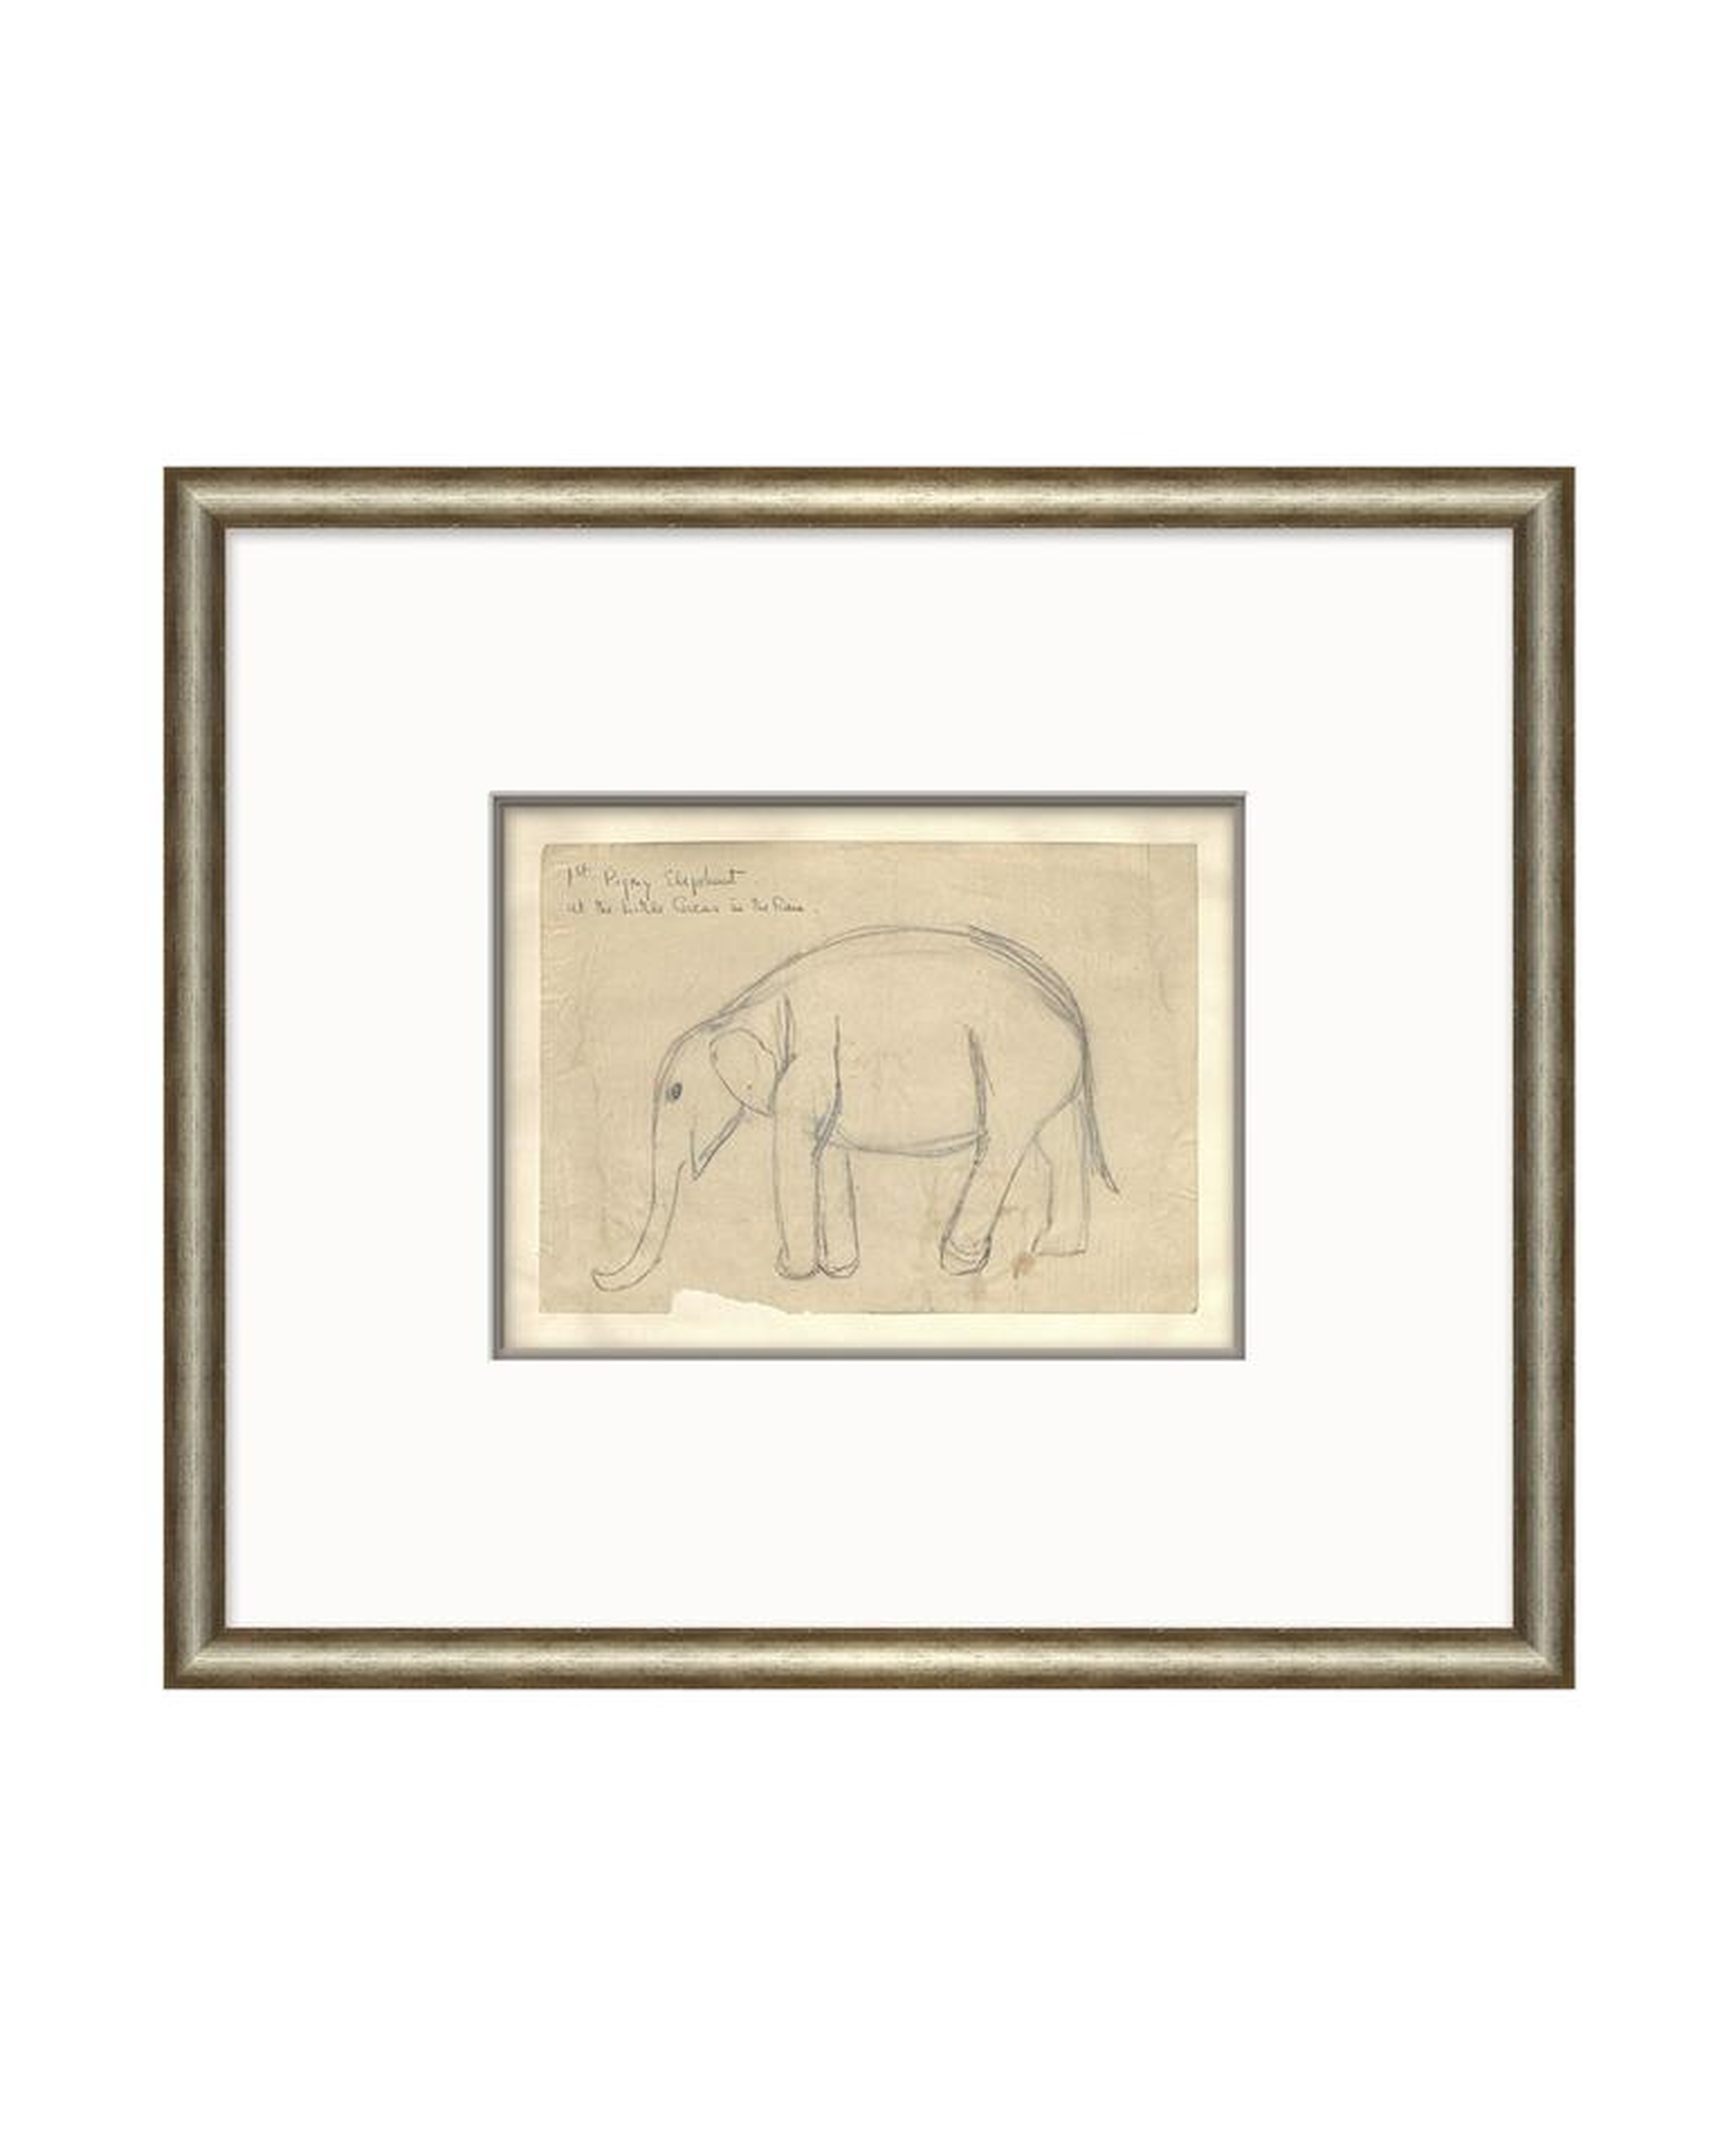 ELEPHANT SKETCH - McGee & Co.